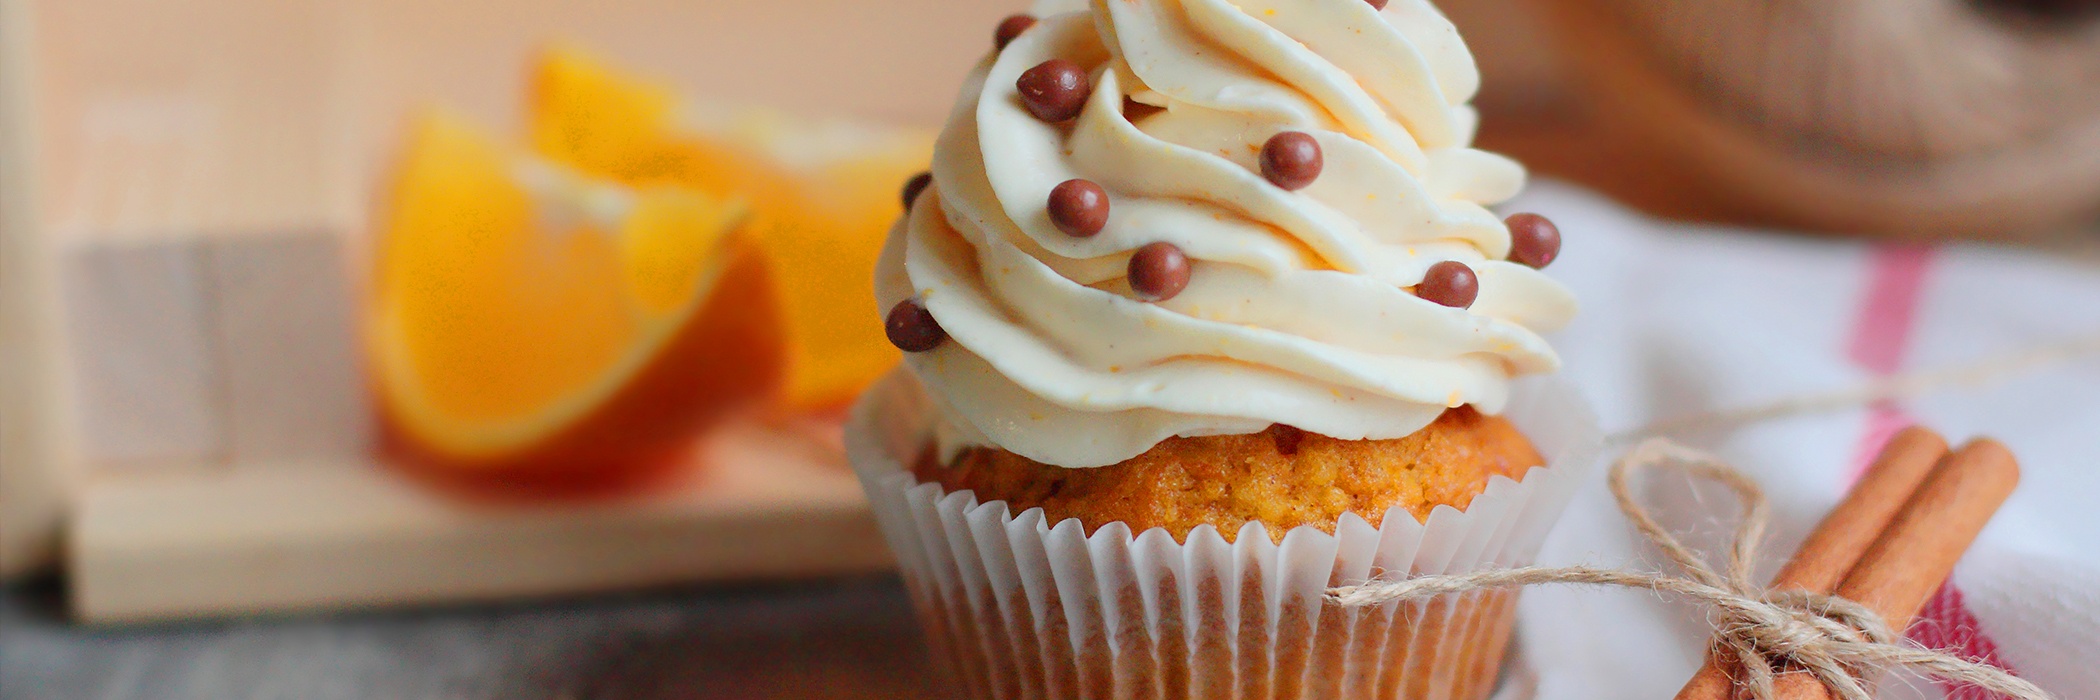 Spennellare code di sirena al cioccolato con glitter alimentari per  decorare cupcakes alla vaniglia.